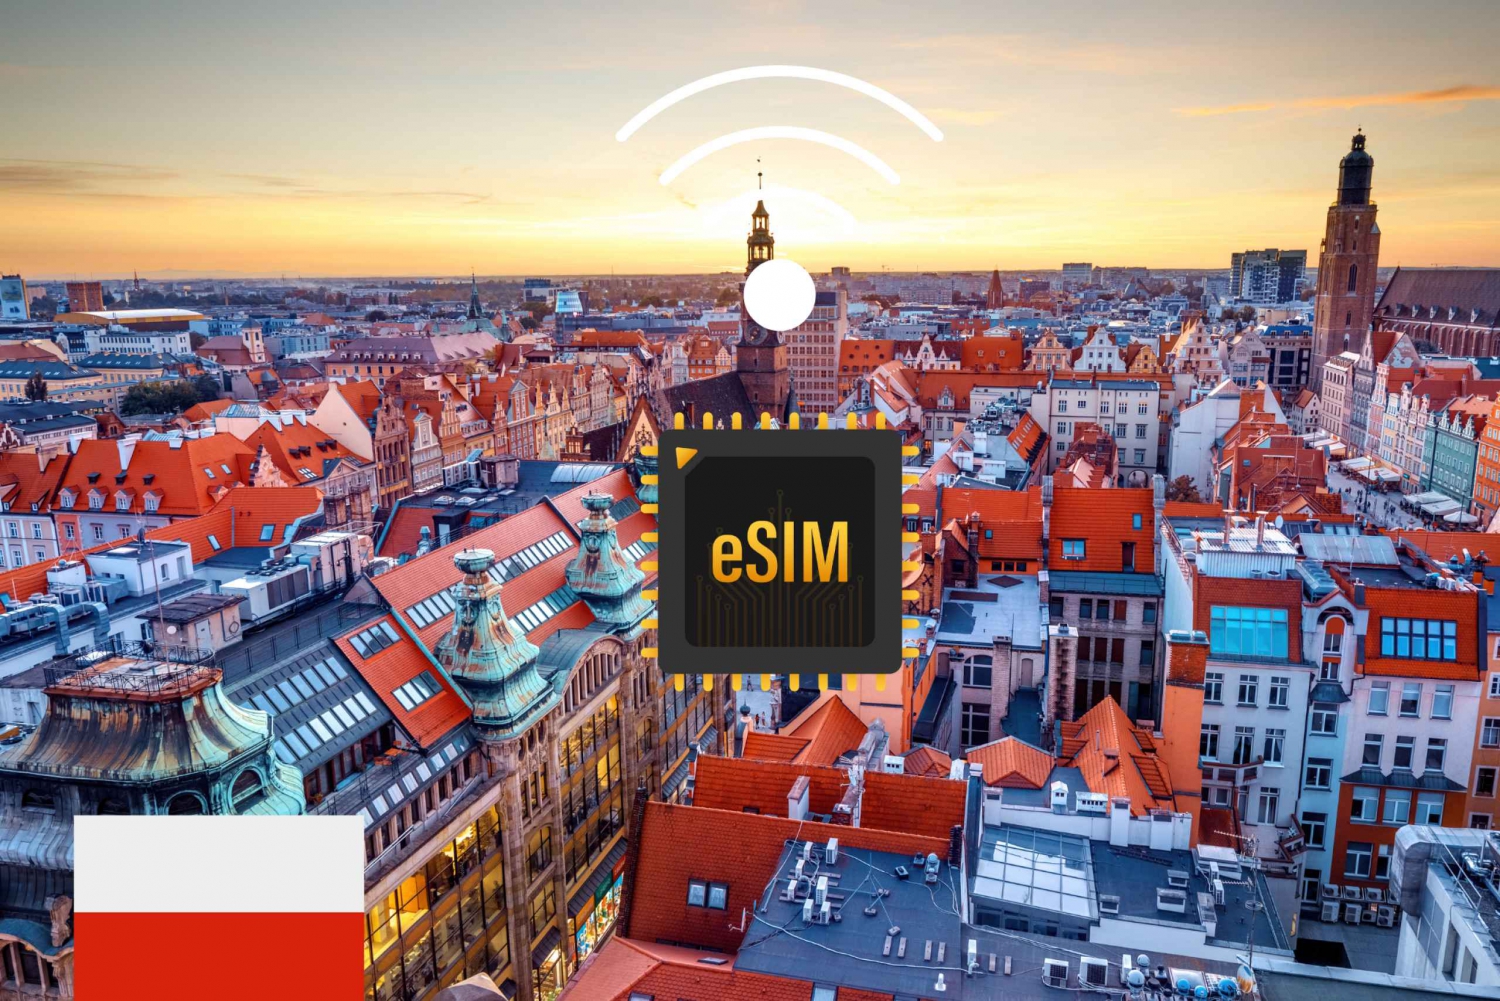 eSIM Polen: Internet-dataplan med høj hastighed 4G/5G